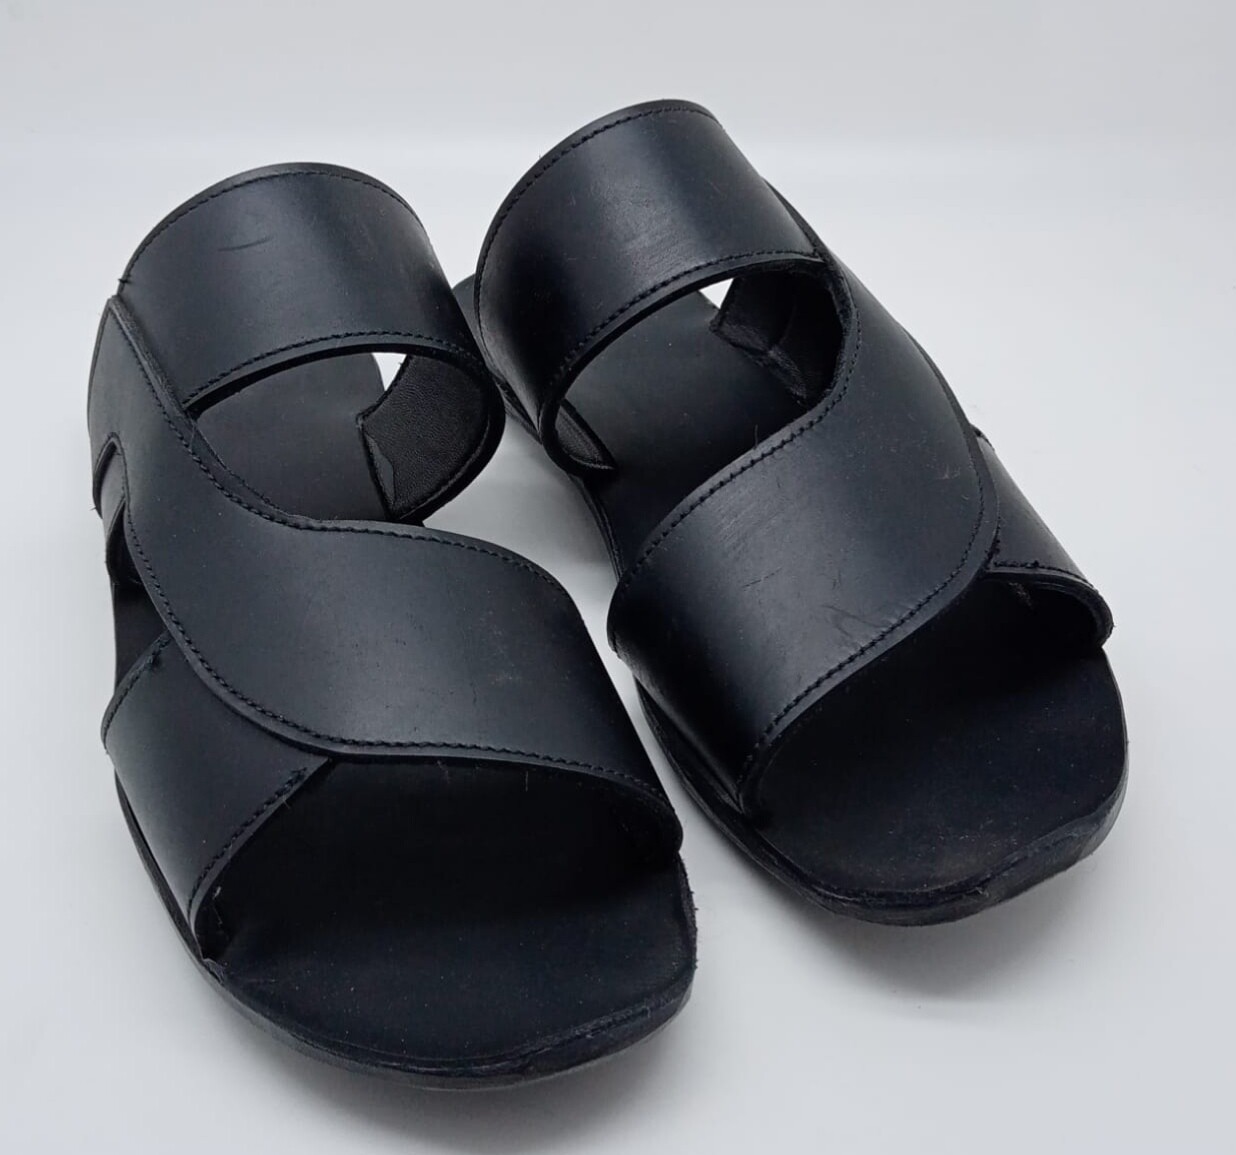 SUVERETO - Sandalo artigianale in pelle